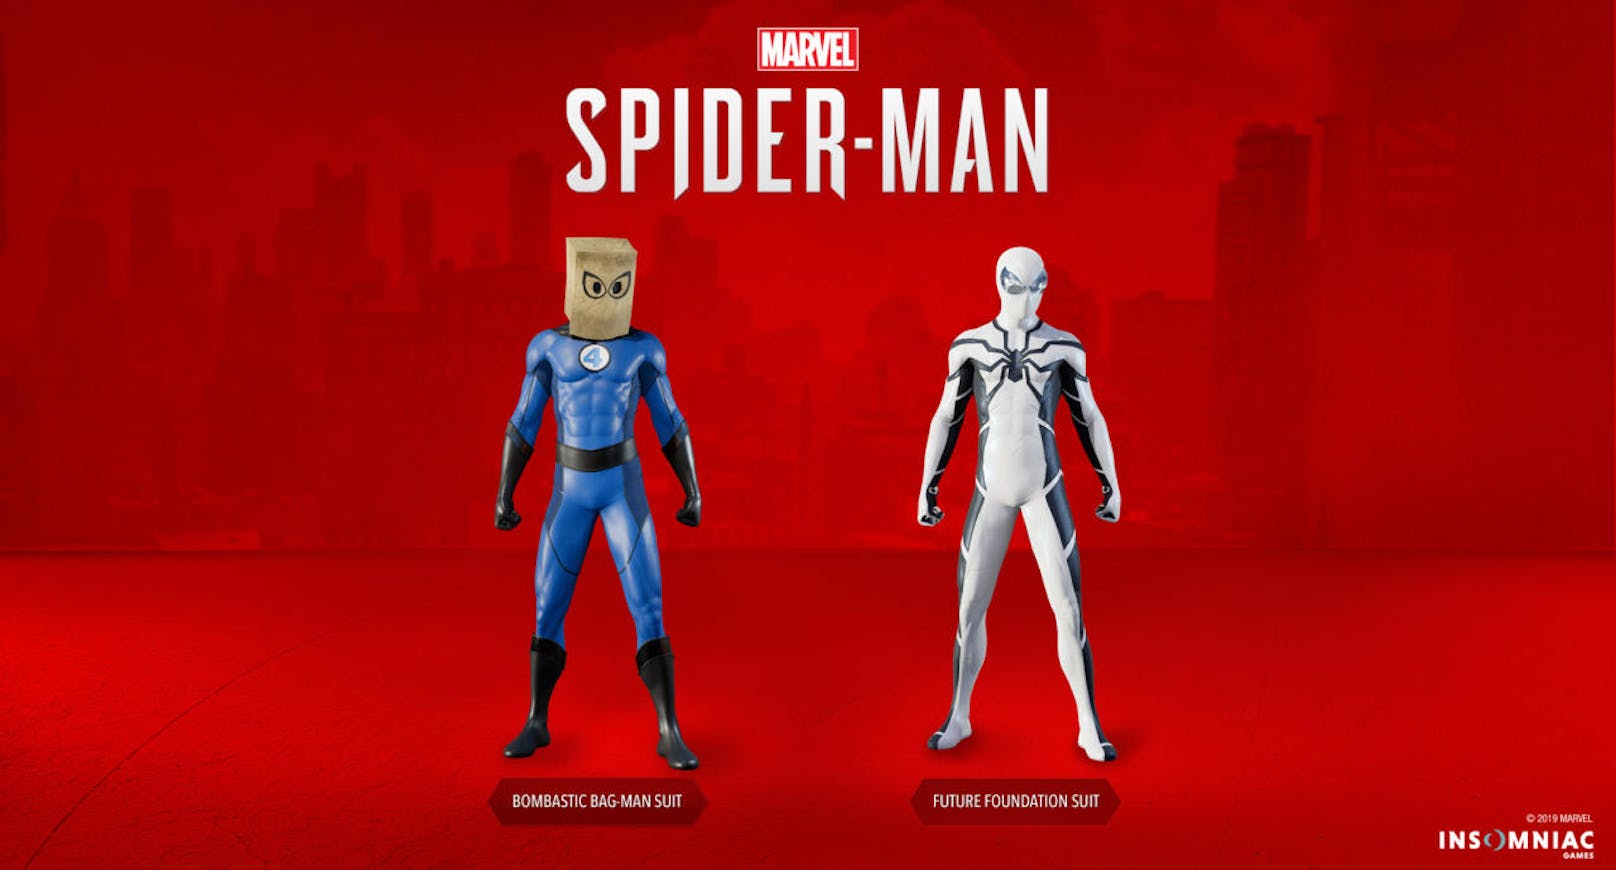 Ab sofort stehen Besitzern von Marvel's Spider-Man mit dem kostenlosen Patch 1.14 zwei neue Anzüge im Spiel zur Verfügung: der "Bombastic Bag-Man"-Anzug und der "Future Foundation"-Anzug. Mit den beiden Anzügen feiern die Fantastic Four ihr Marvel-Comeback. Die Anzüge sind an zwei Comic-Abenteuer von Spider-Man mit den Fantastischen Vier angelehnt. In einem Fall bekam Spidey einen Fantastic-FourAnzug spendiert, die fehlende Maske wurde durch eine Papiertüte ersetzt. Im anderen Fall wurde Spidey ein Teil der Fantastic Four unter dem Titel "The Future Foundation" und bekam sein schwarz-weißes Kostüm.